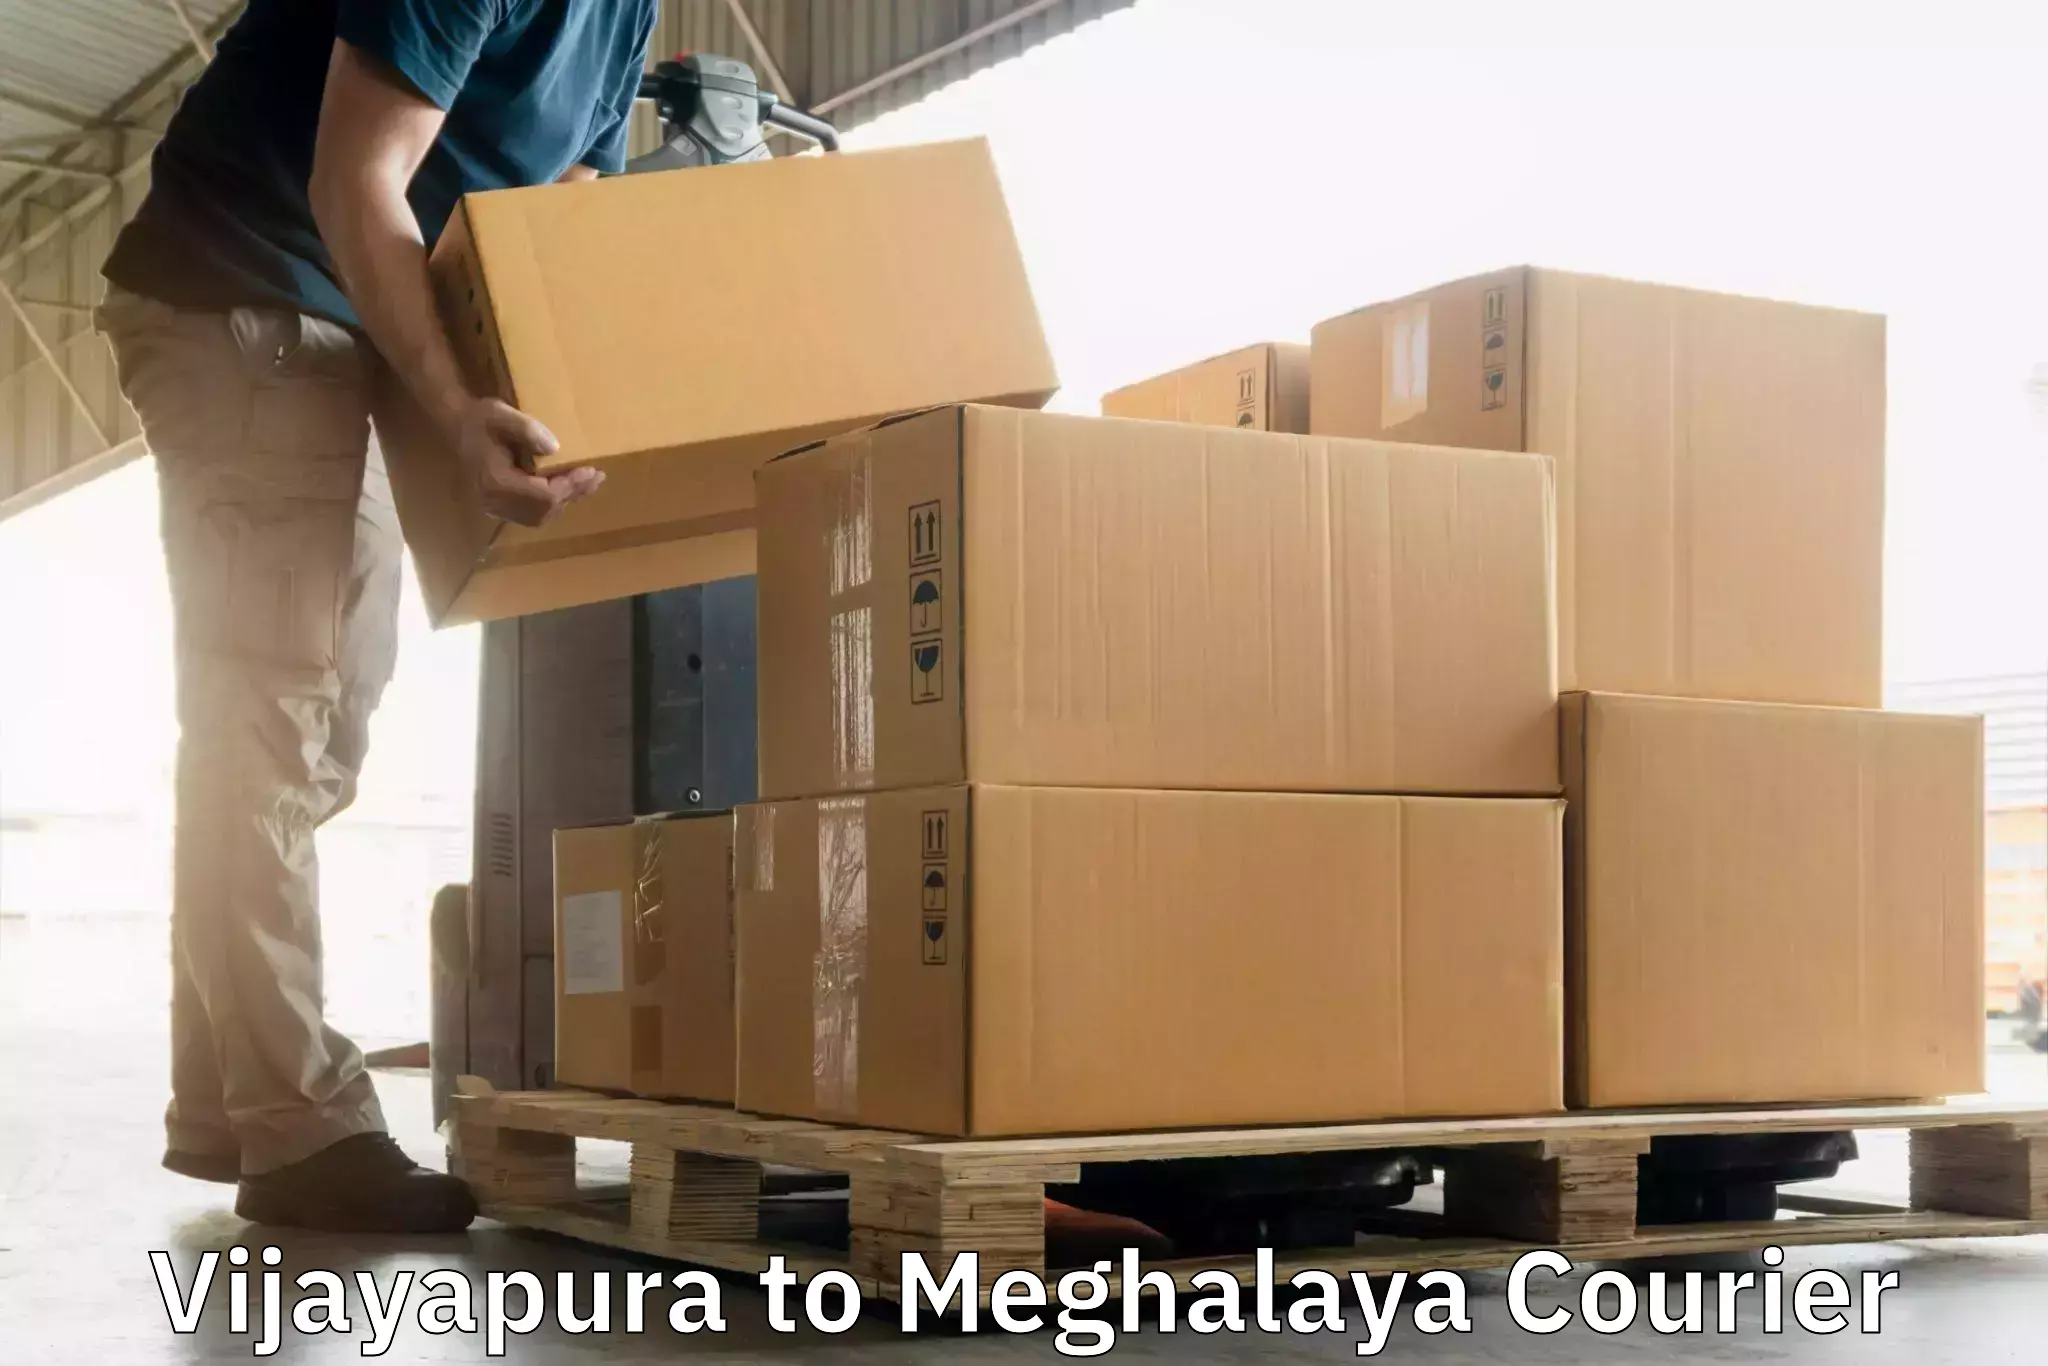 Digital courier platforms Vijayapura to Cherrapunji